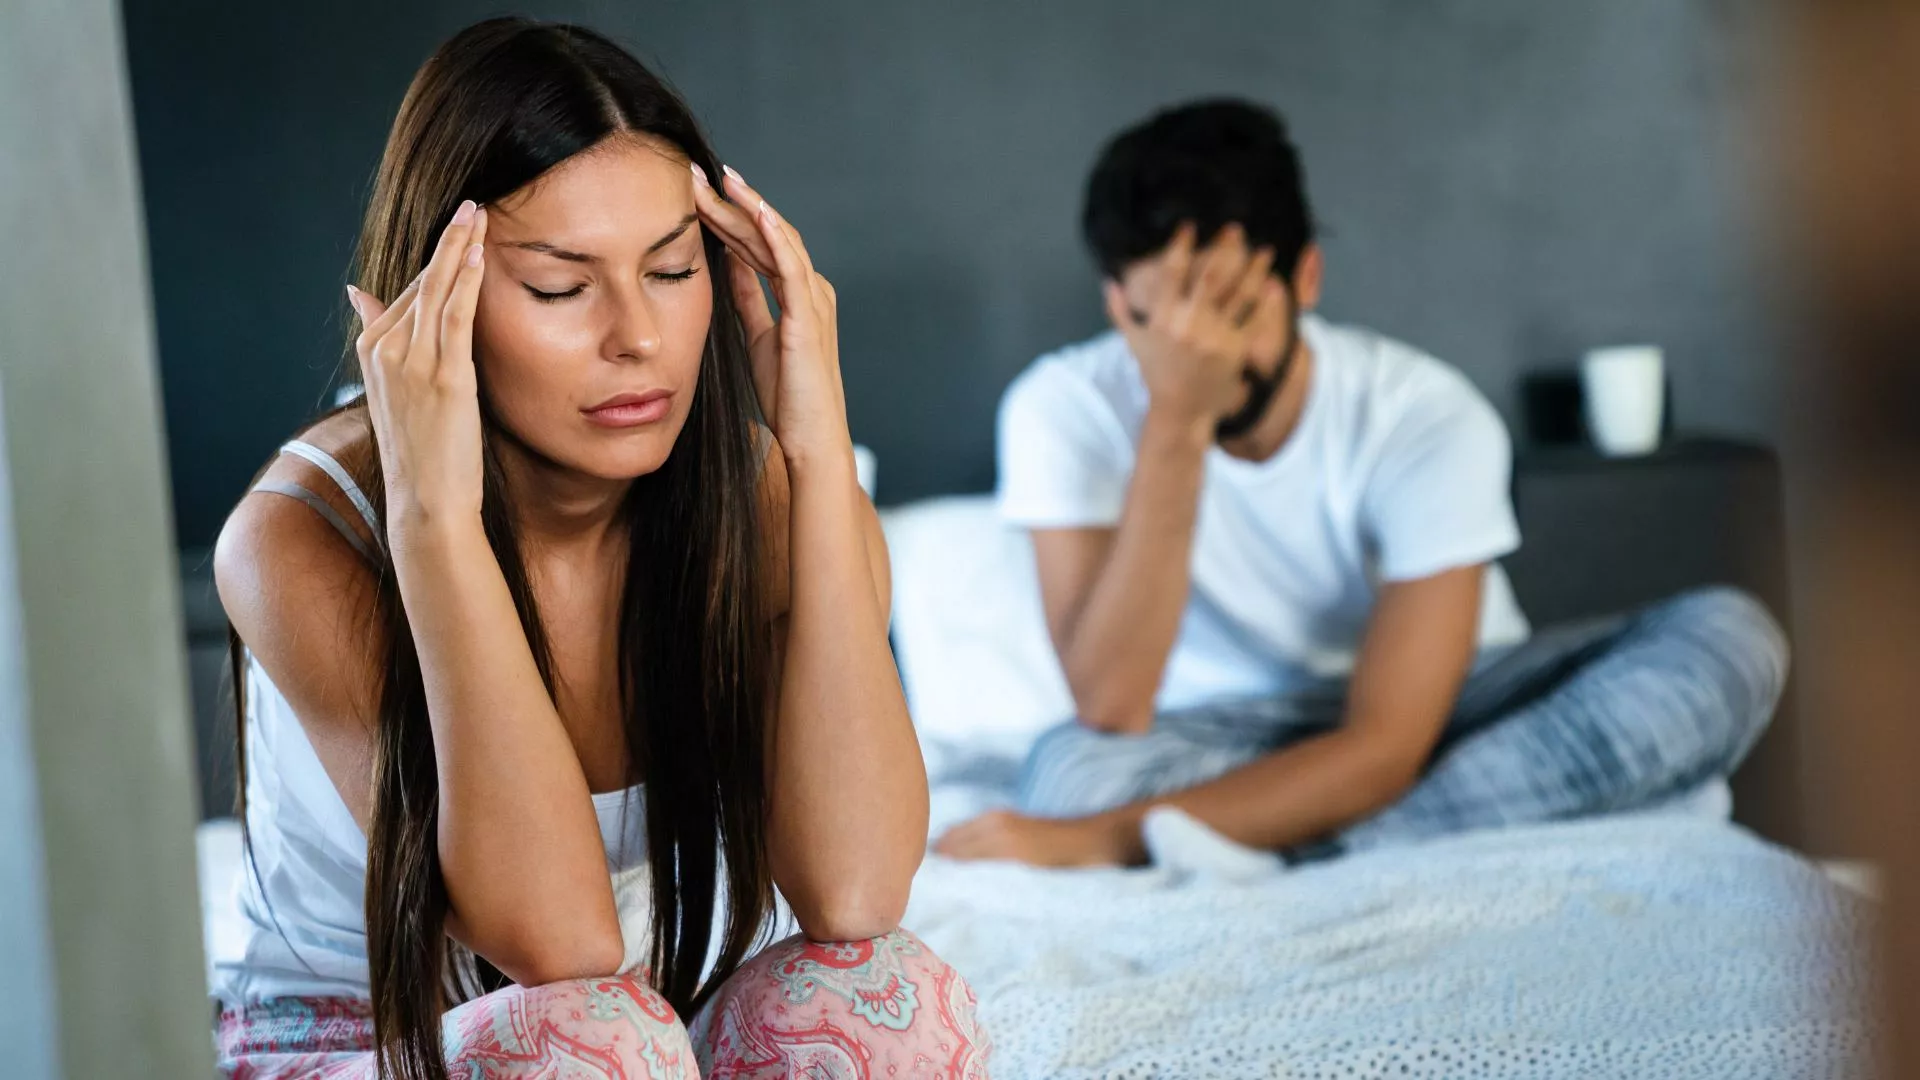 داروهای ضد افسردگی نابودگر روابط جنسی؛ چه باید کرد؟